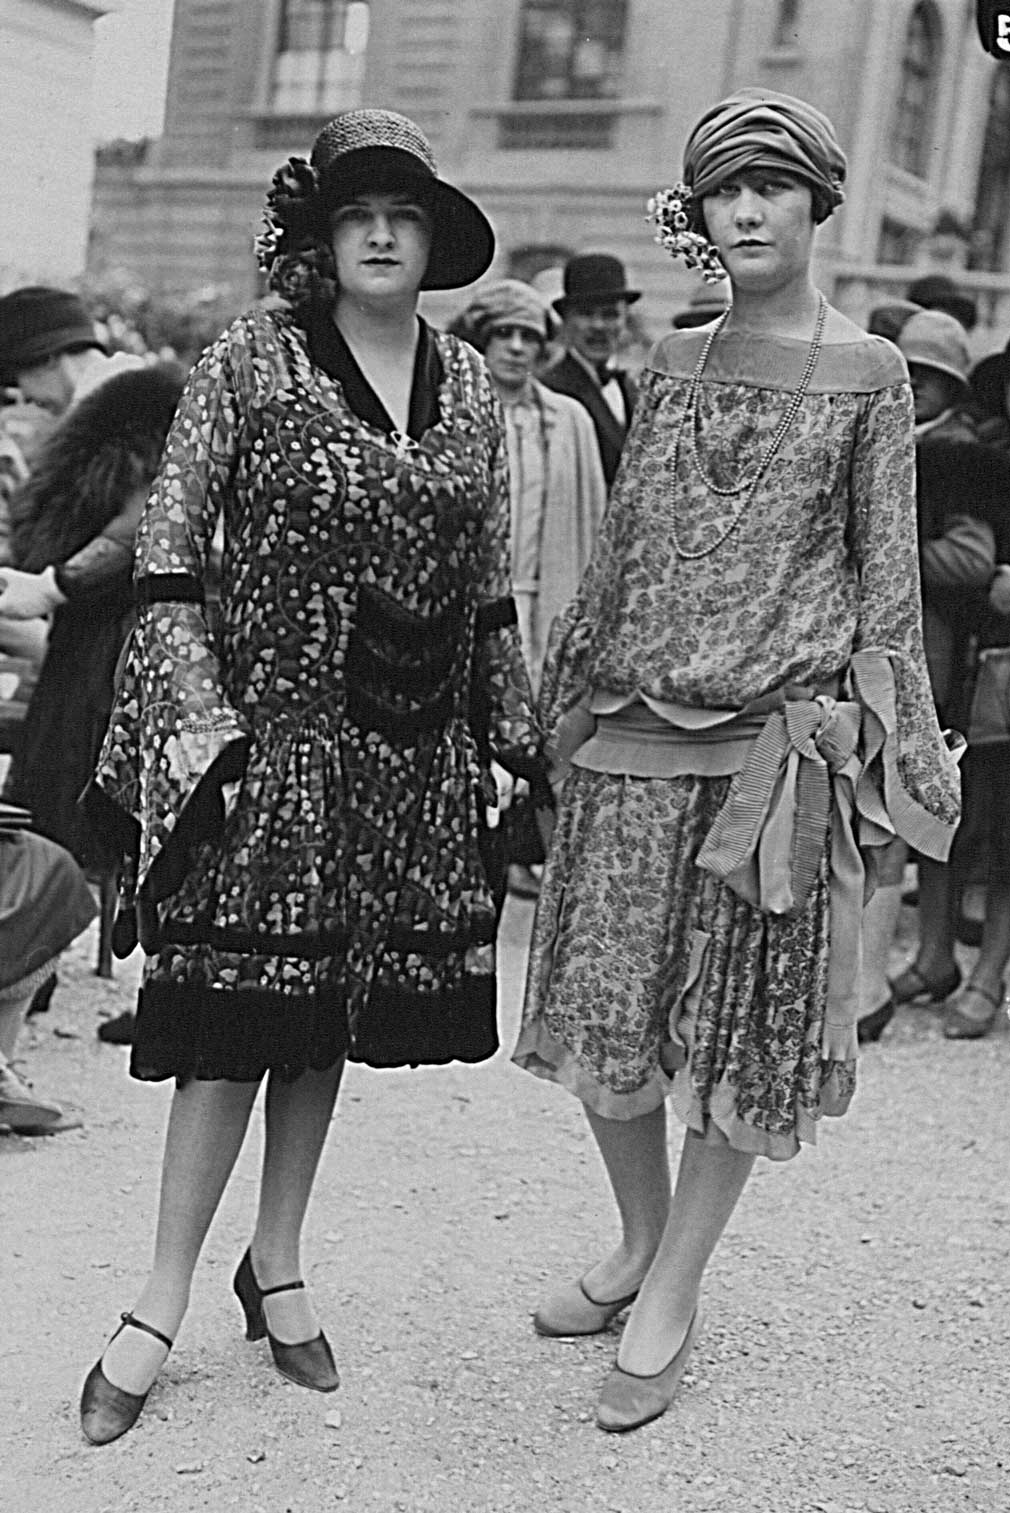 Jusque dans les années 1920, les rubans de soie étaient des accessoires de mode importants, photographie de mode, Seiler & Co, s.d. © Museum.BL, Liestal